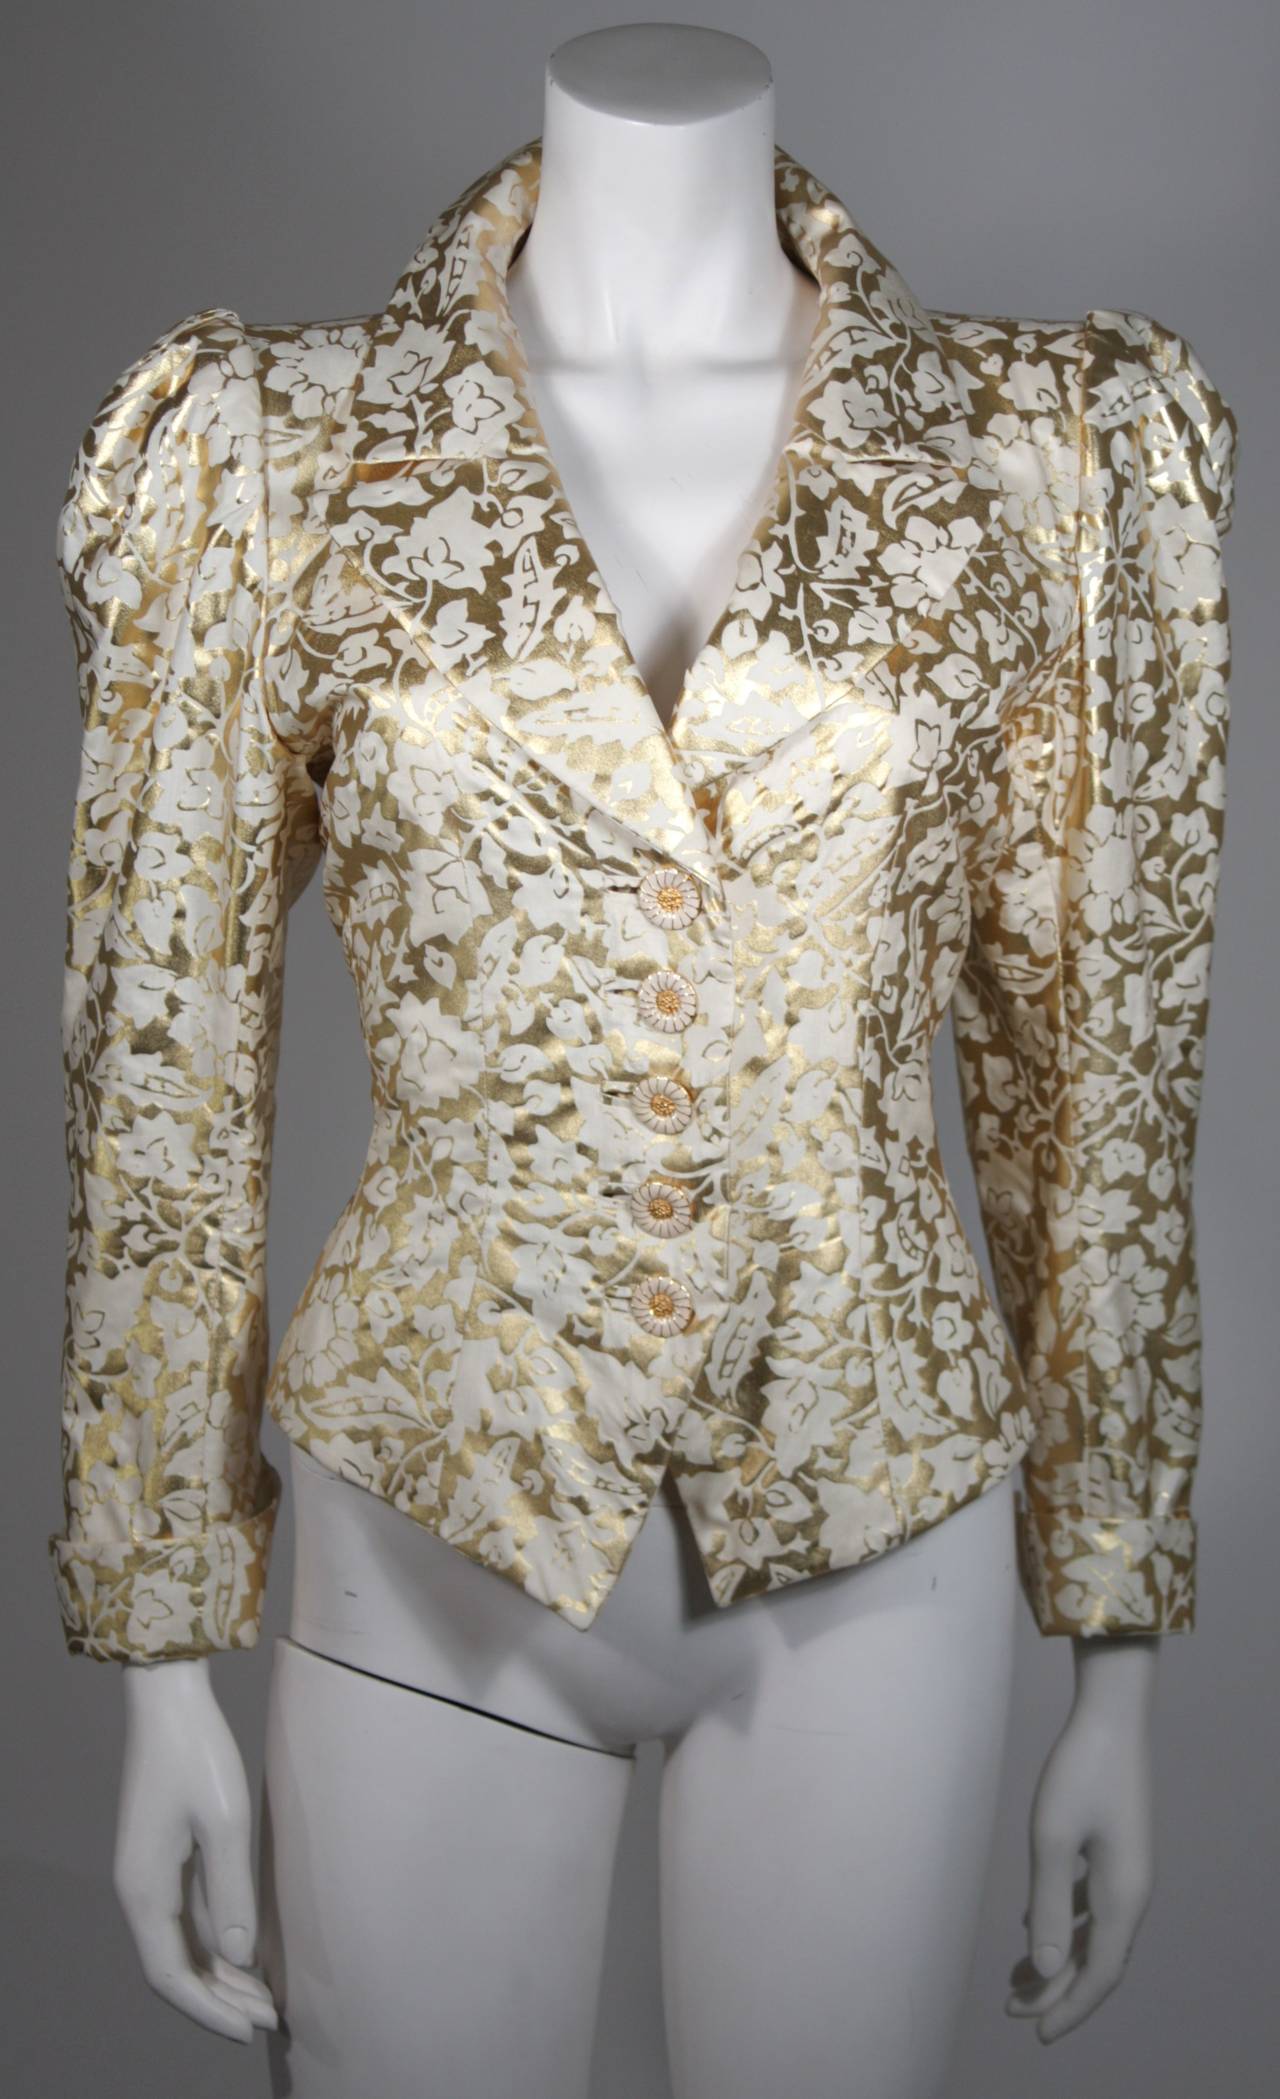 Diese Jacke von Yves Saint Laurent ist aus einem gold-weißen Stoff mit Blumenmotiv gefertigt. Die Ärmel sind im Puffstil mit Manschette gearbeitet. In der vorderen Mitte befinden sich goldene Knöpfe mit weißer Emaille im Gänseblümchen-Stil. In